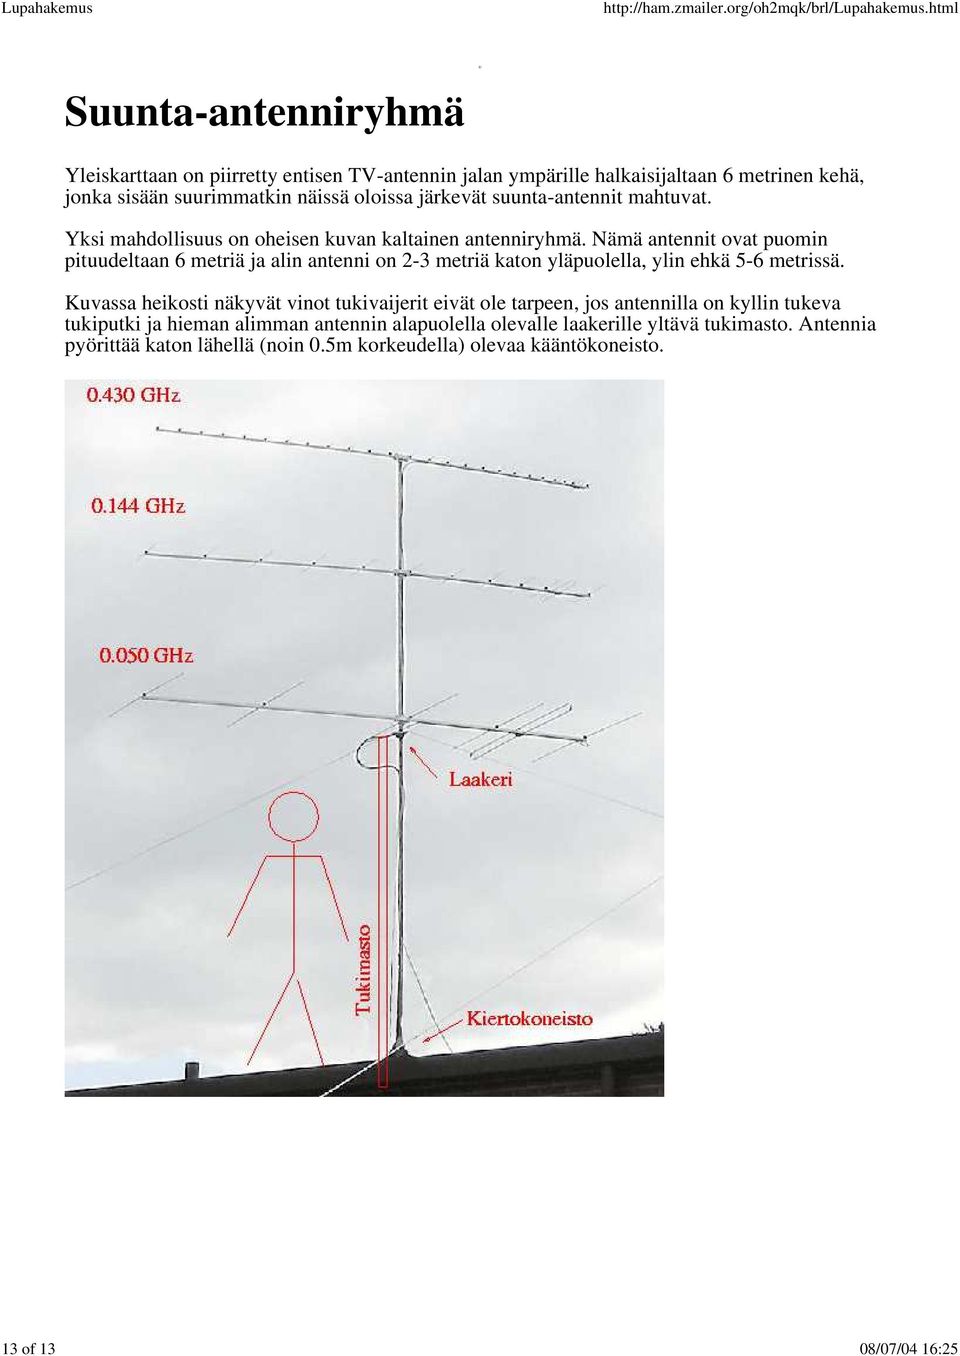 Nämä antennit ovat puomin pituudeltaan 6 metriä ja alin antenni on 2-3 metriä katon yläpuolella, ylin ehkä 5-6 metrissä.